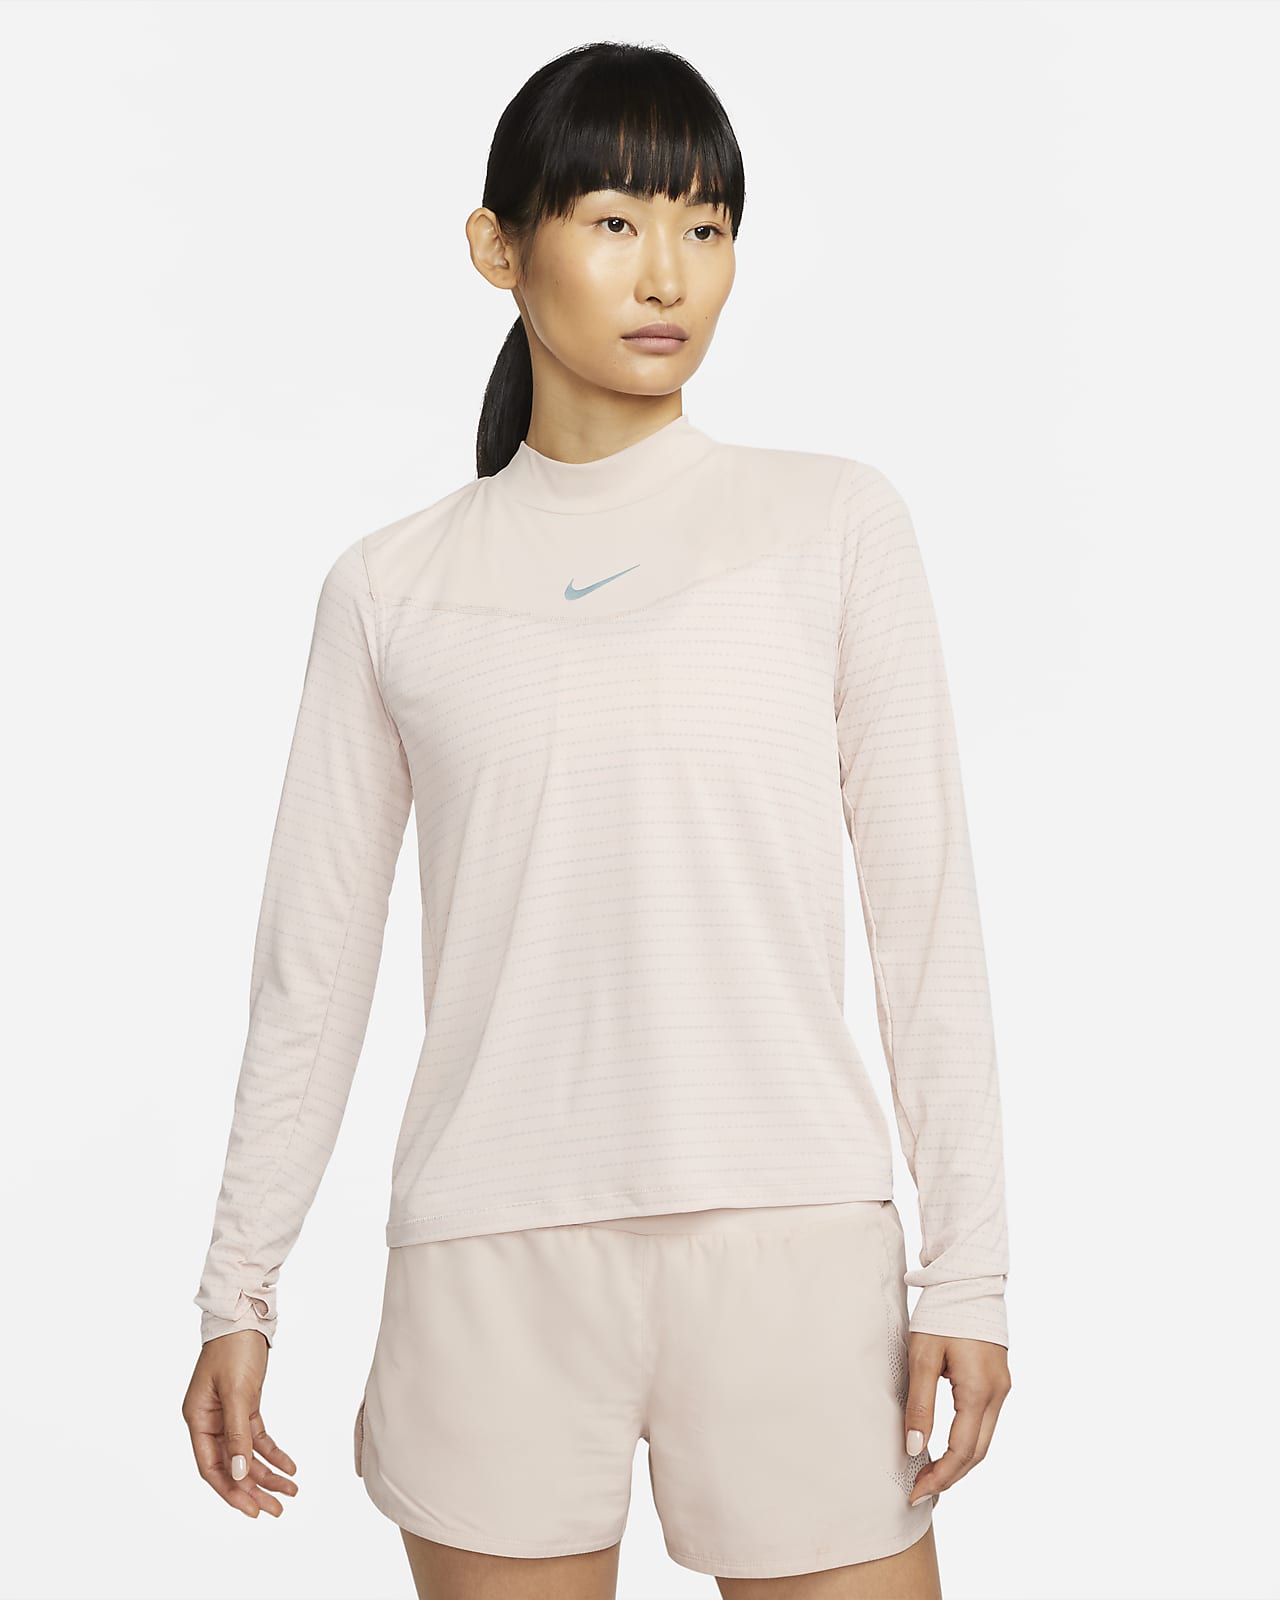 เสื้อวิ่งแขนยาวผู้หญิง Nike Dri-FIT Run Division